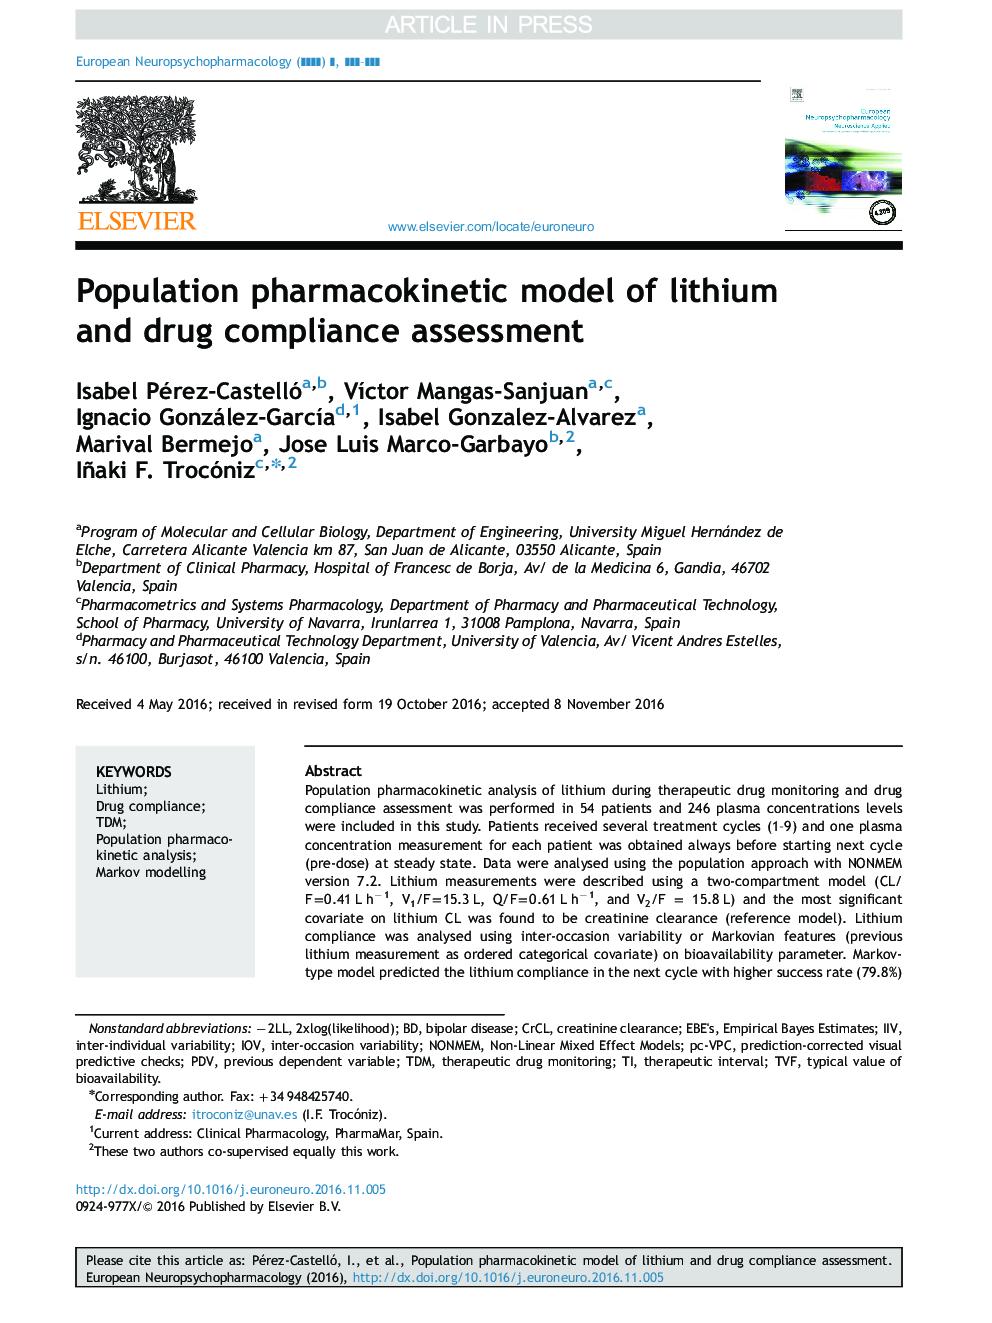 مدل فارماکوکینتیک جمعیتی لیتیوم و ارزیابی انطباق با مواد مخدر 